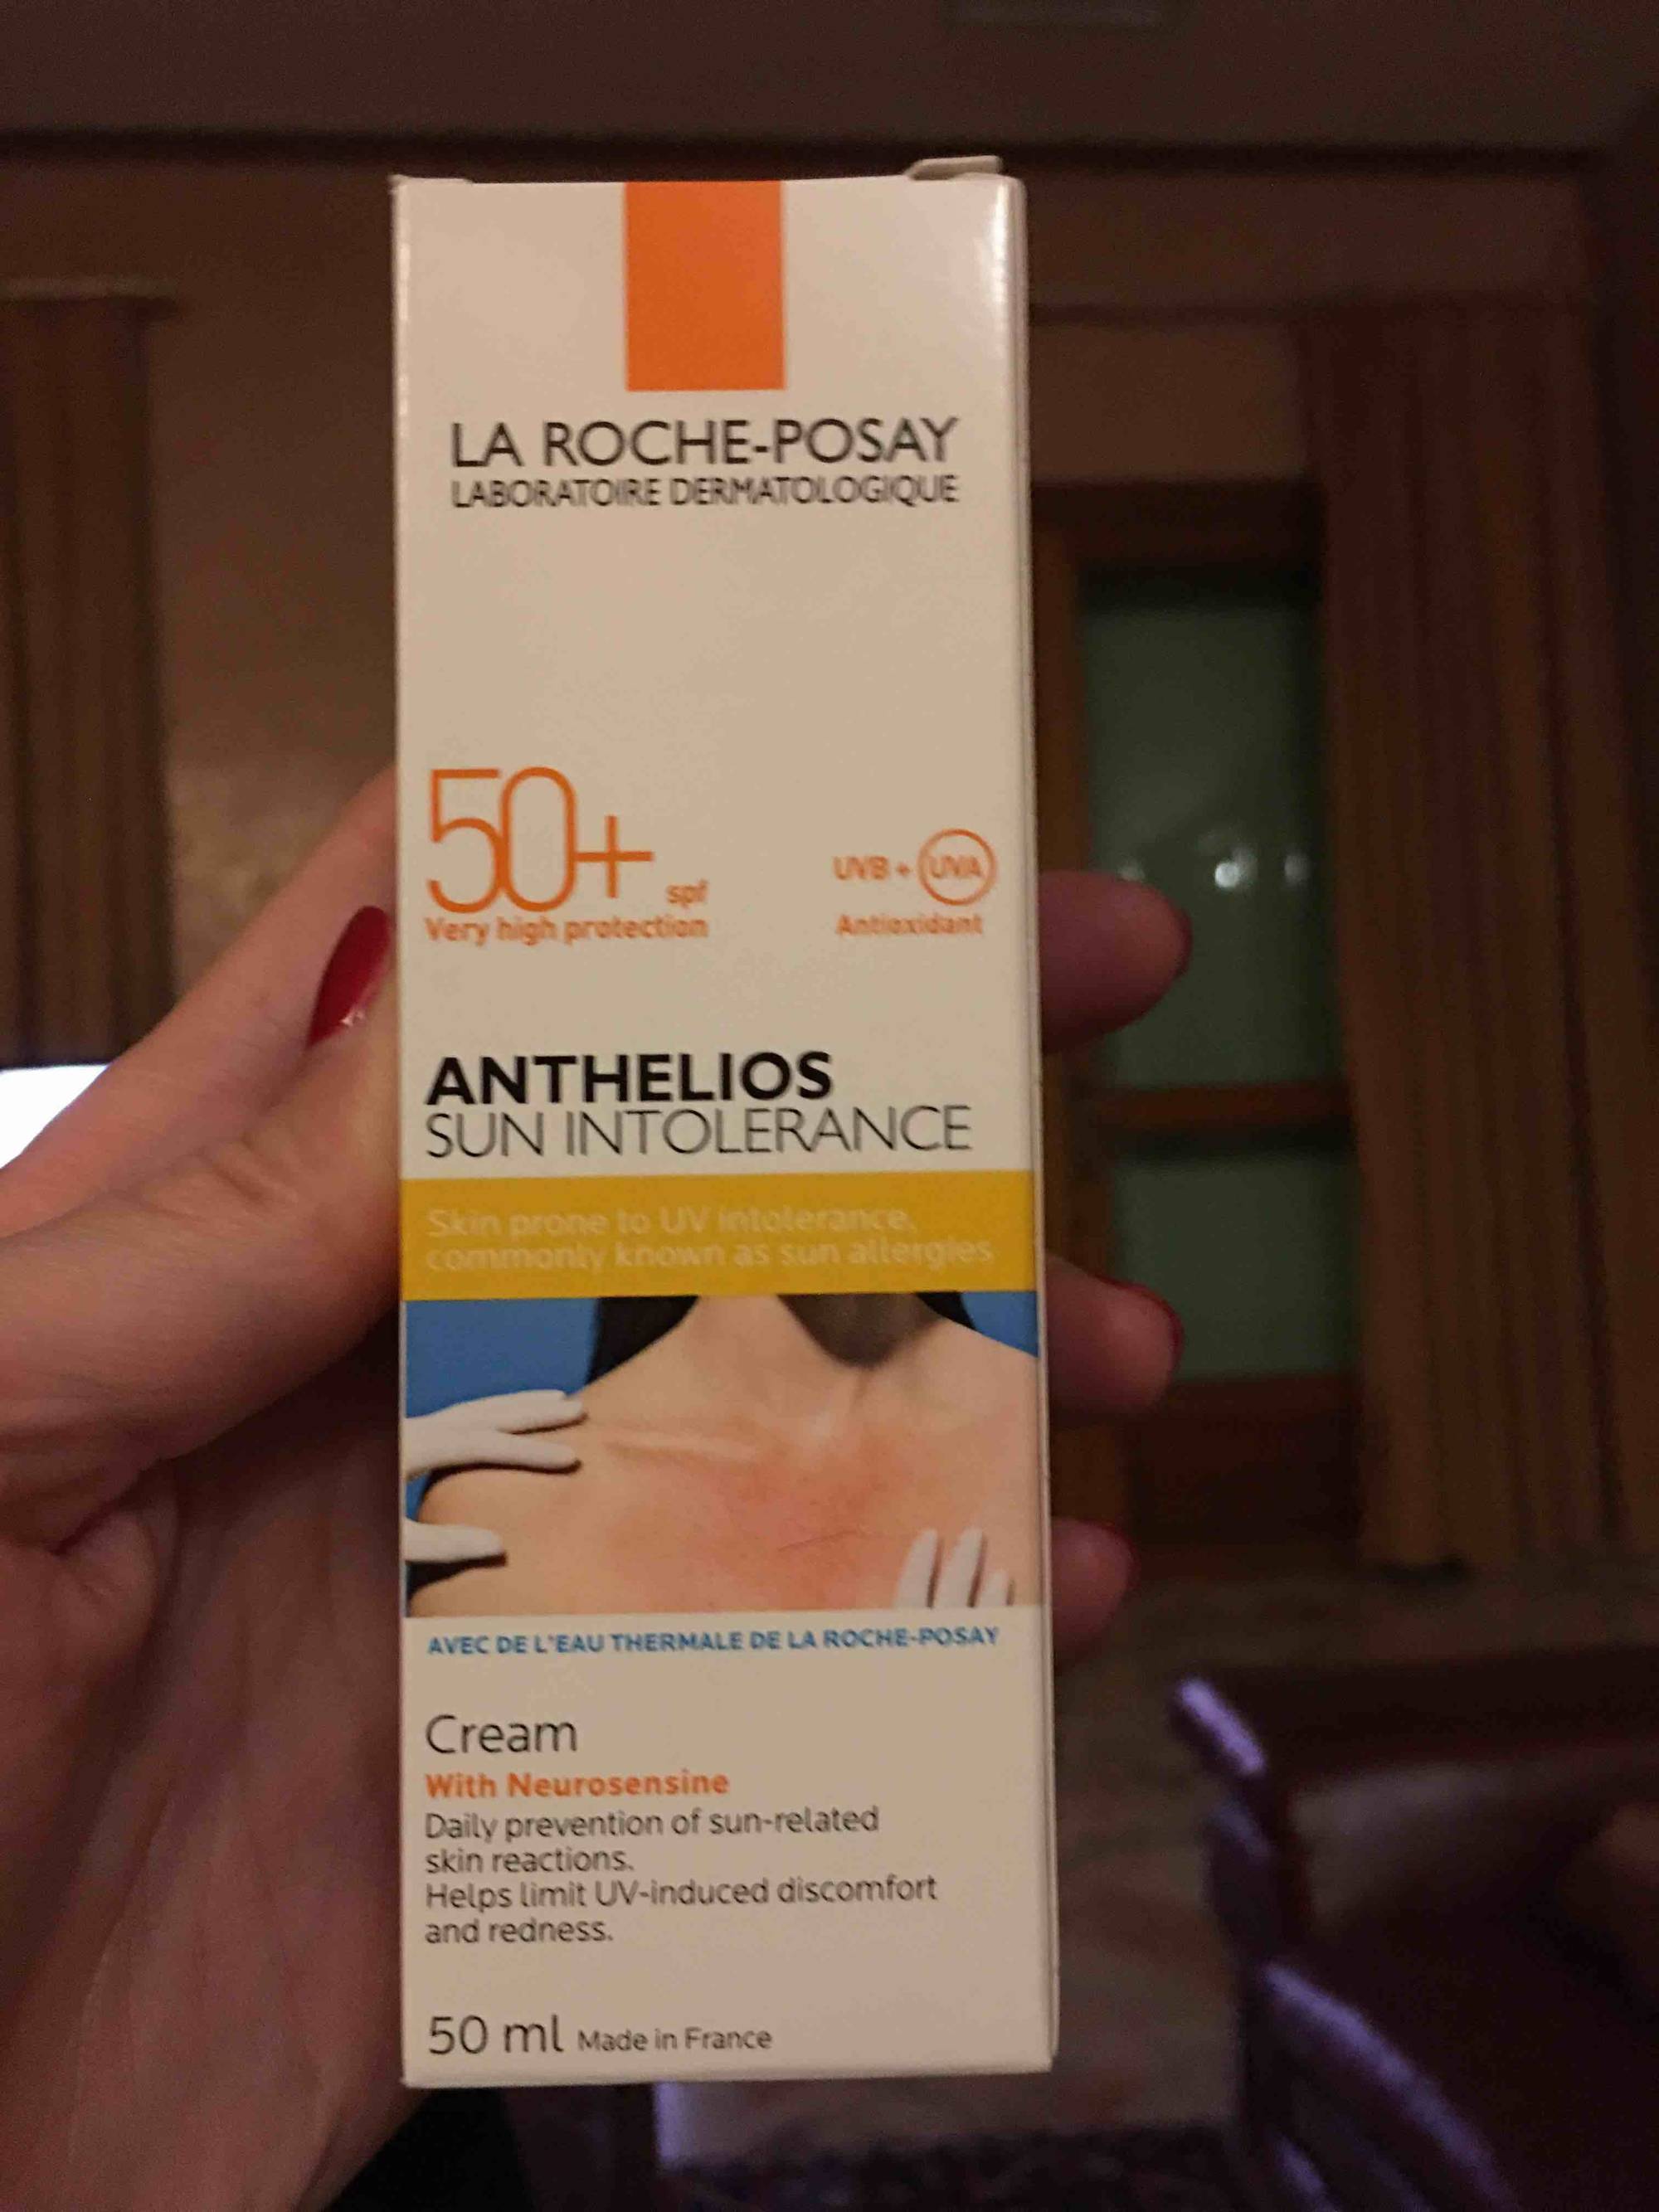 LA ROCHE-POSAY - Anthelios sun intolerance cream SPF 50+